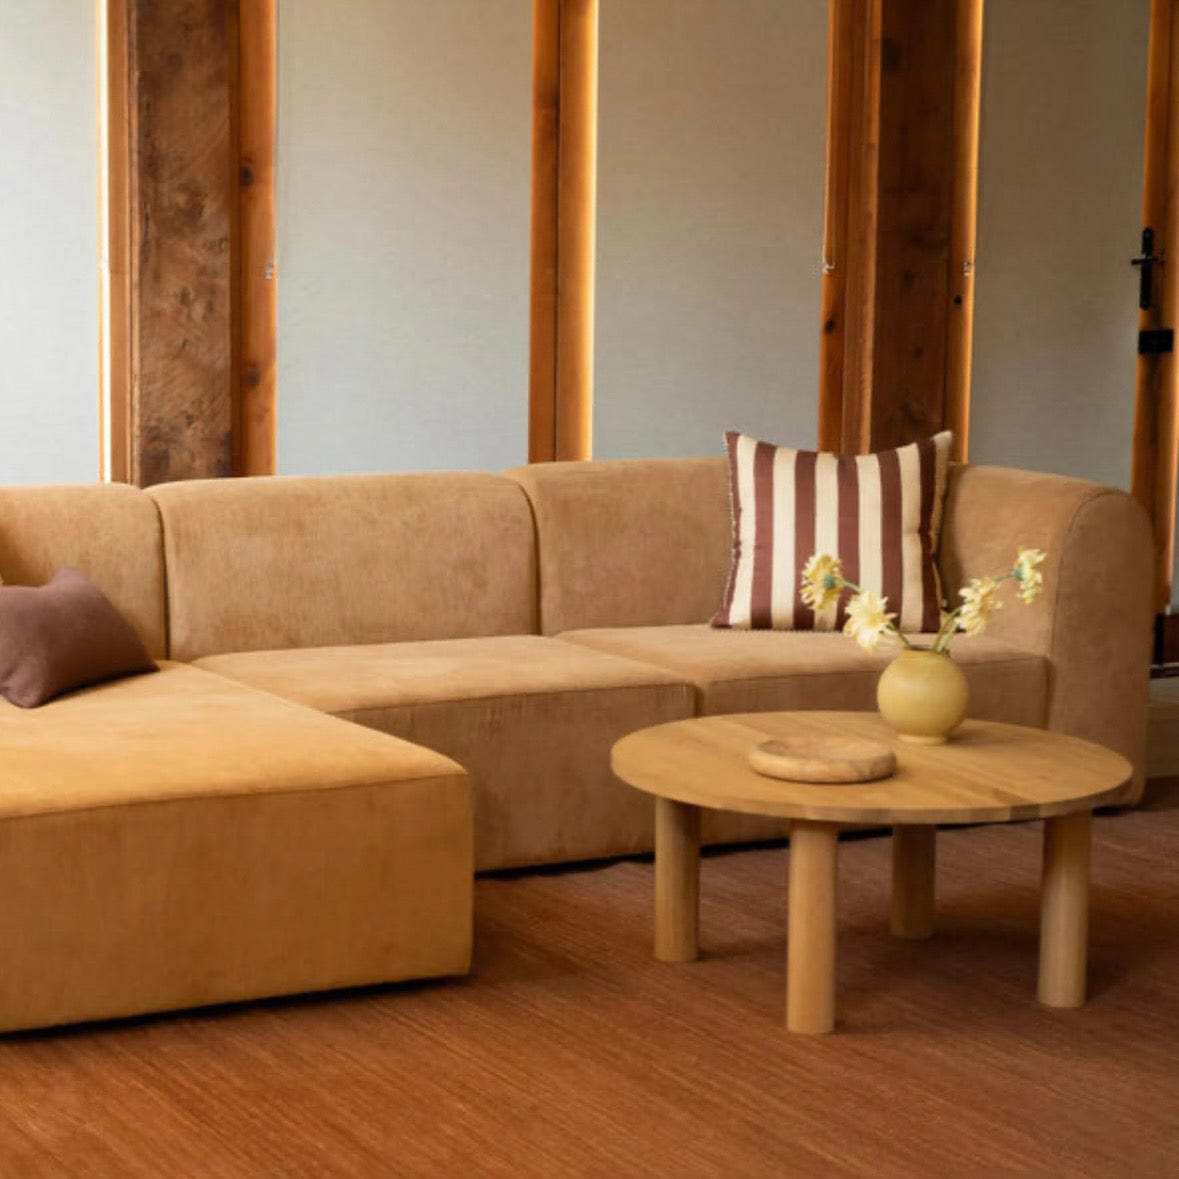 Home Atelier Bayden Scratch Resistant Curve Sofa